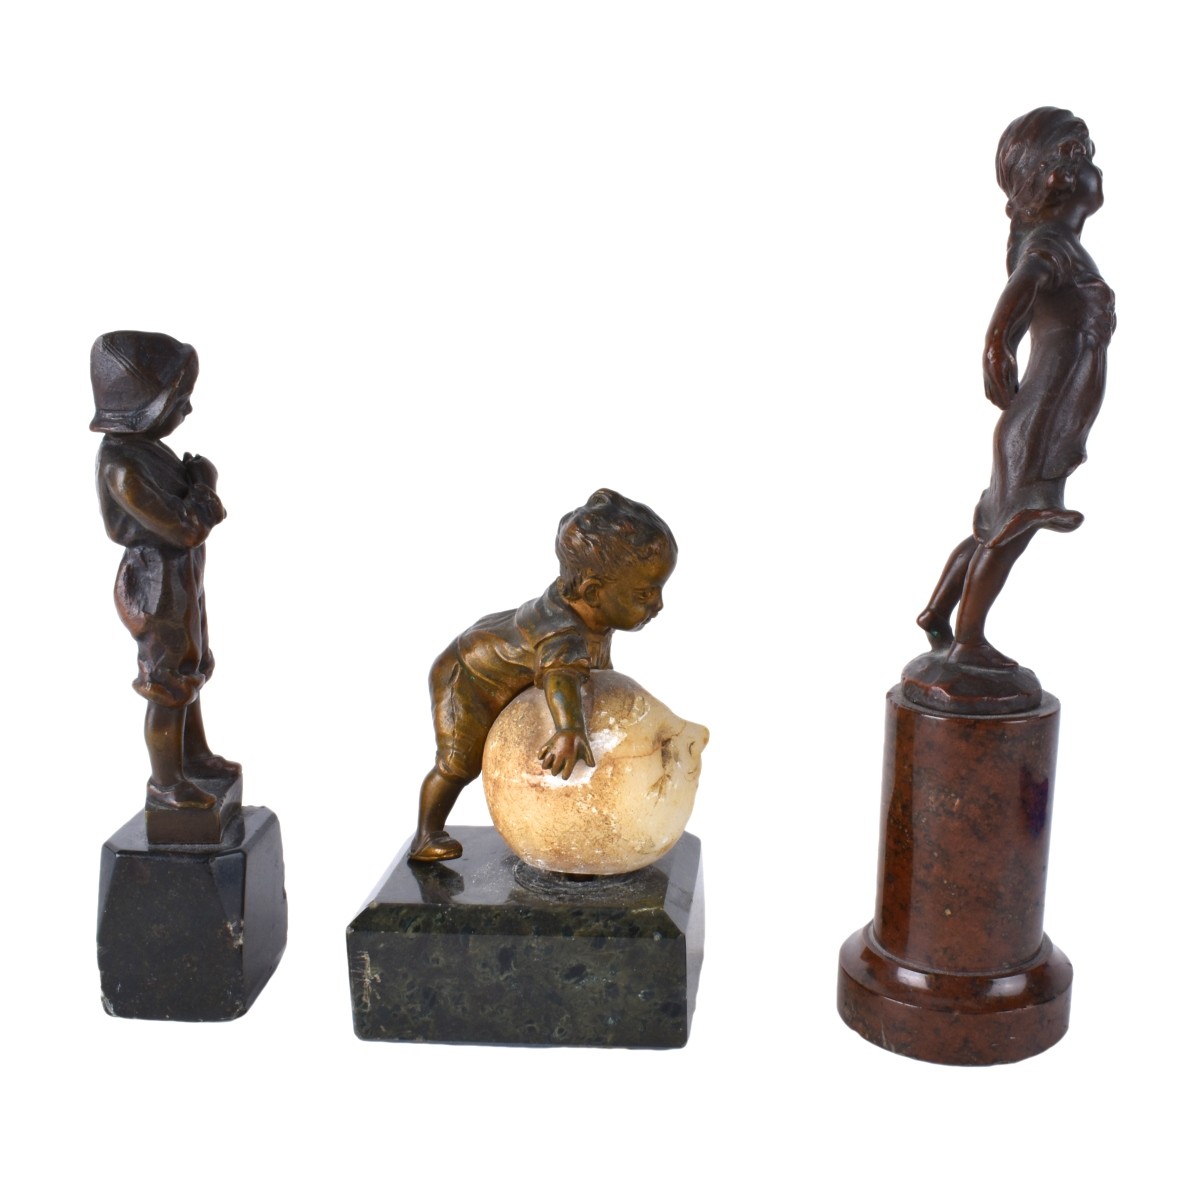 Three Bronze Sculptures